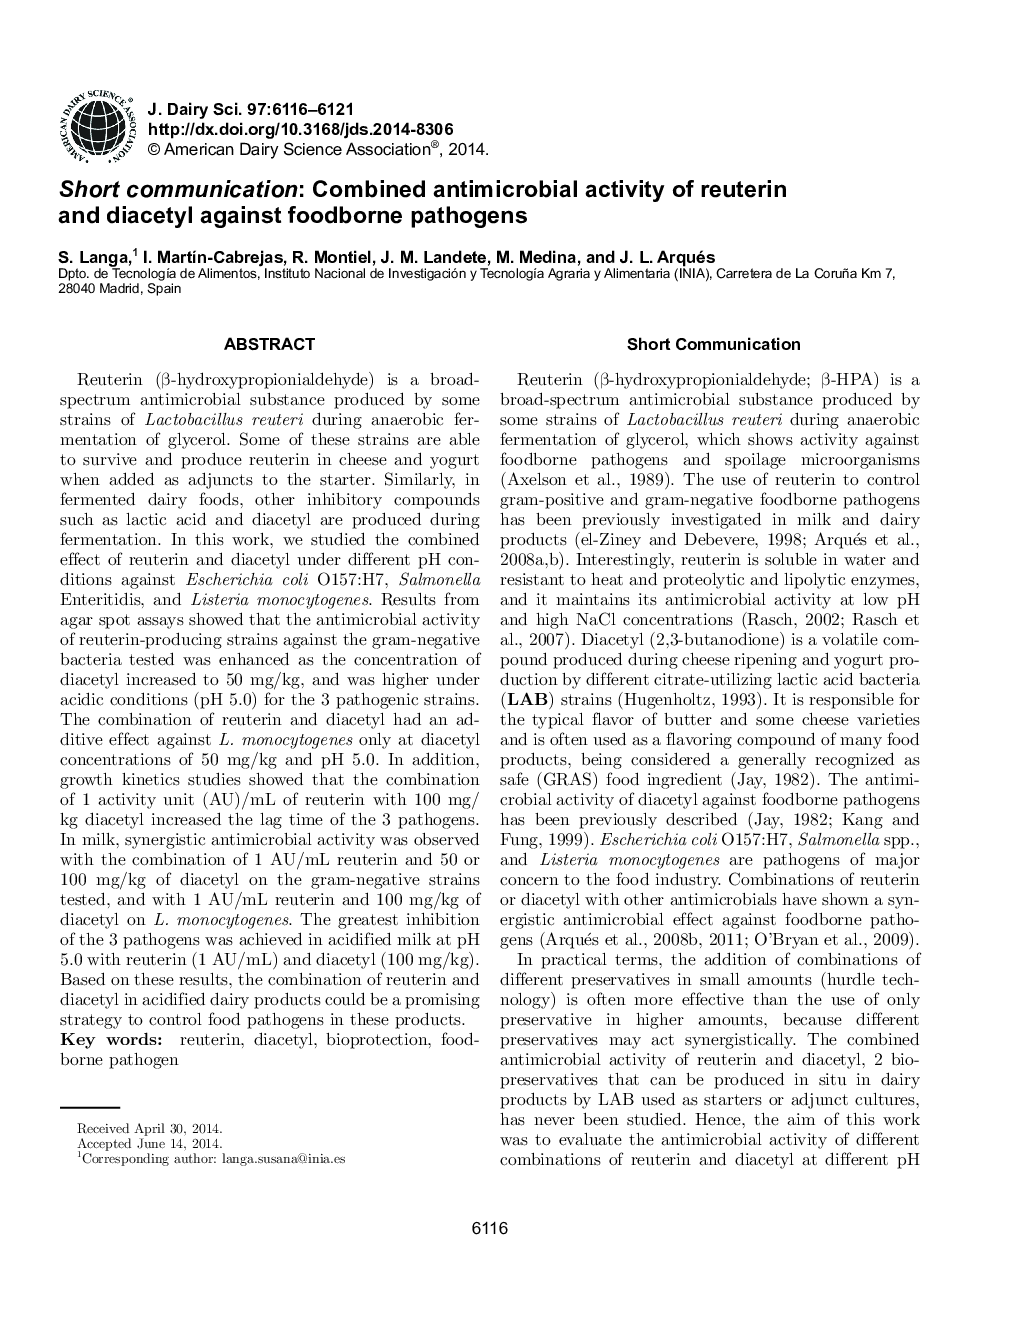 ارتباطات کوتاه: فعالیت ضد میکروبی ترکیبات روتورین و دی سکتیل در برابر پاتوژن های خوراکی 